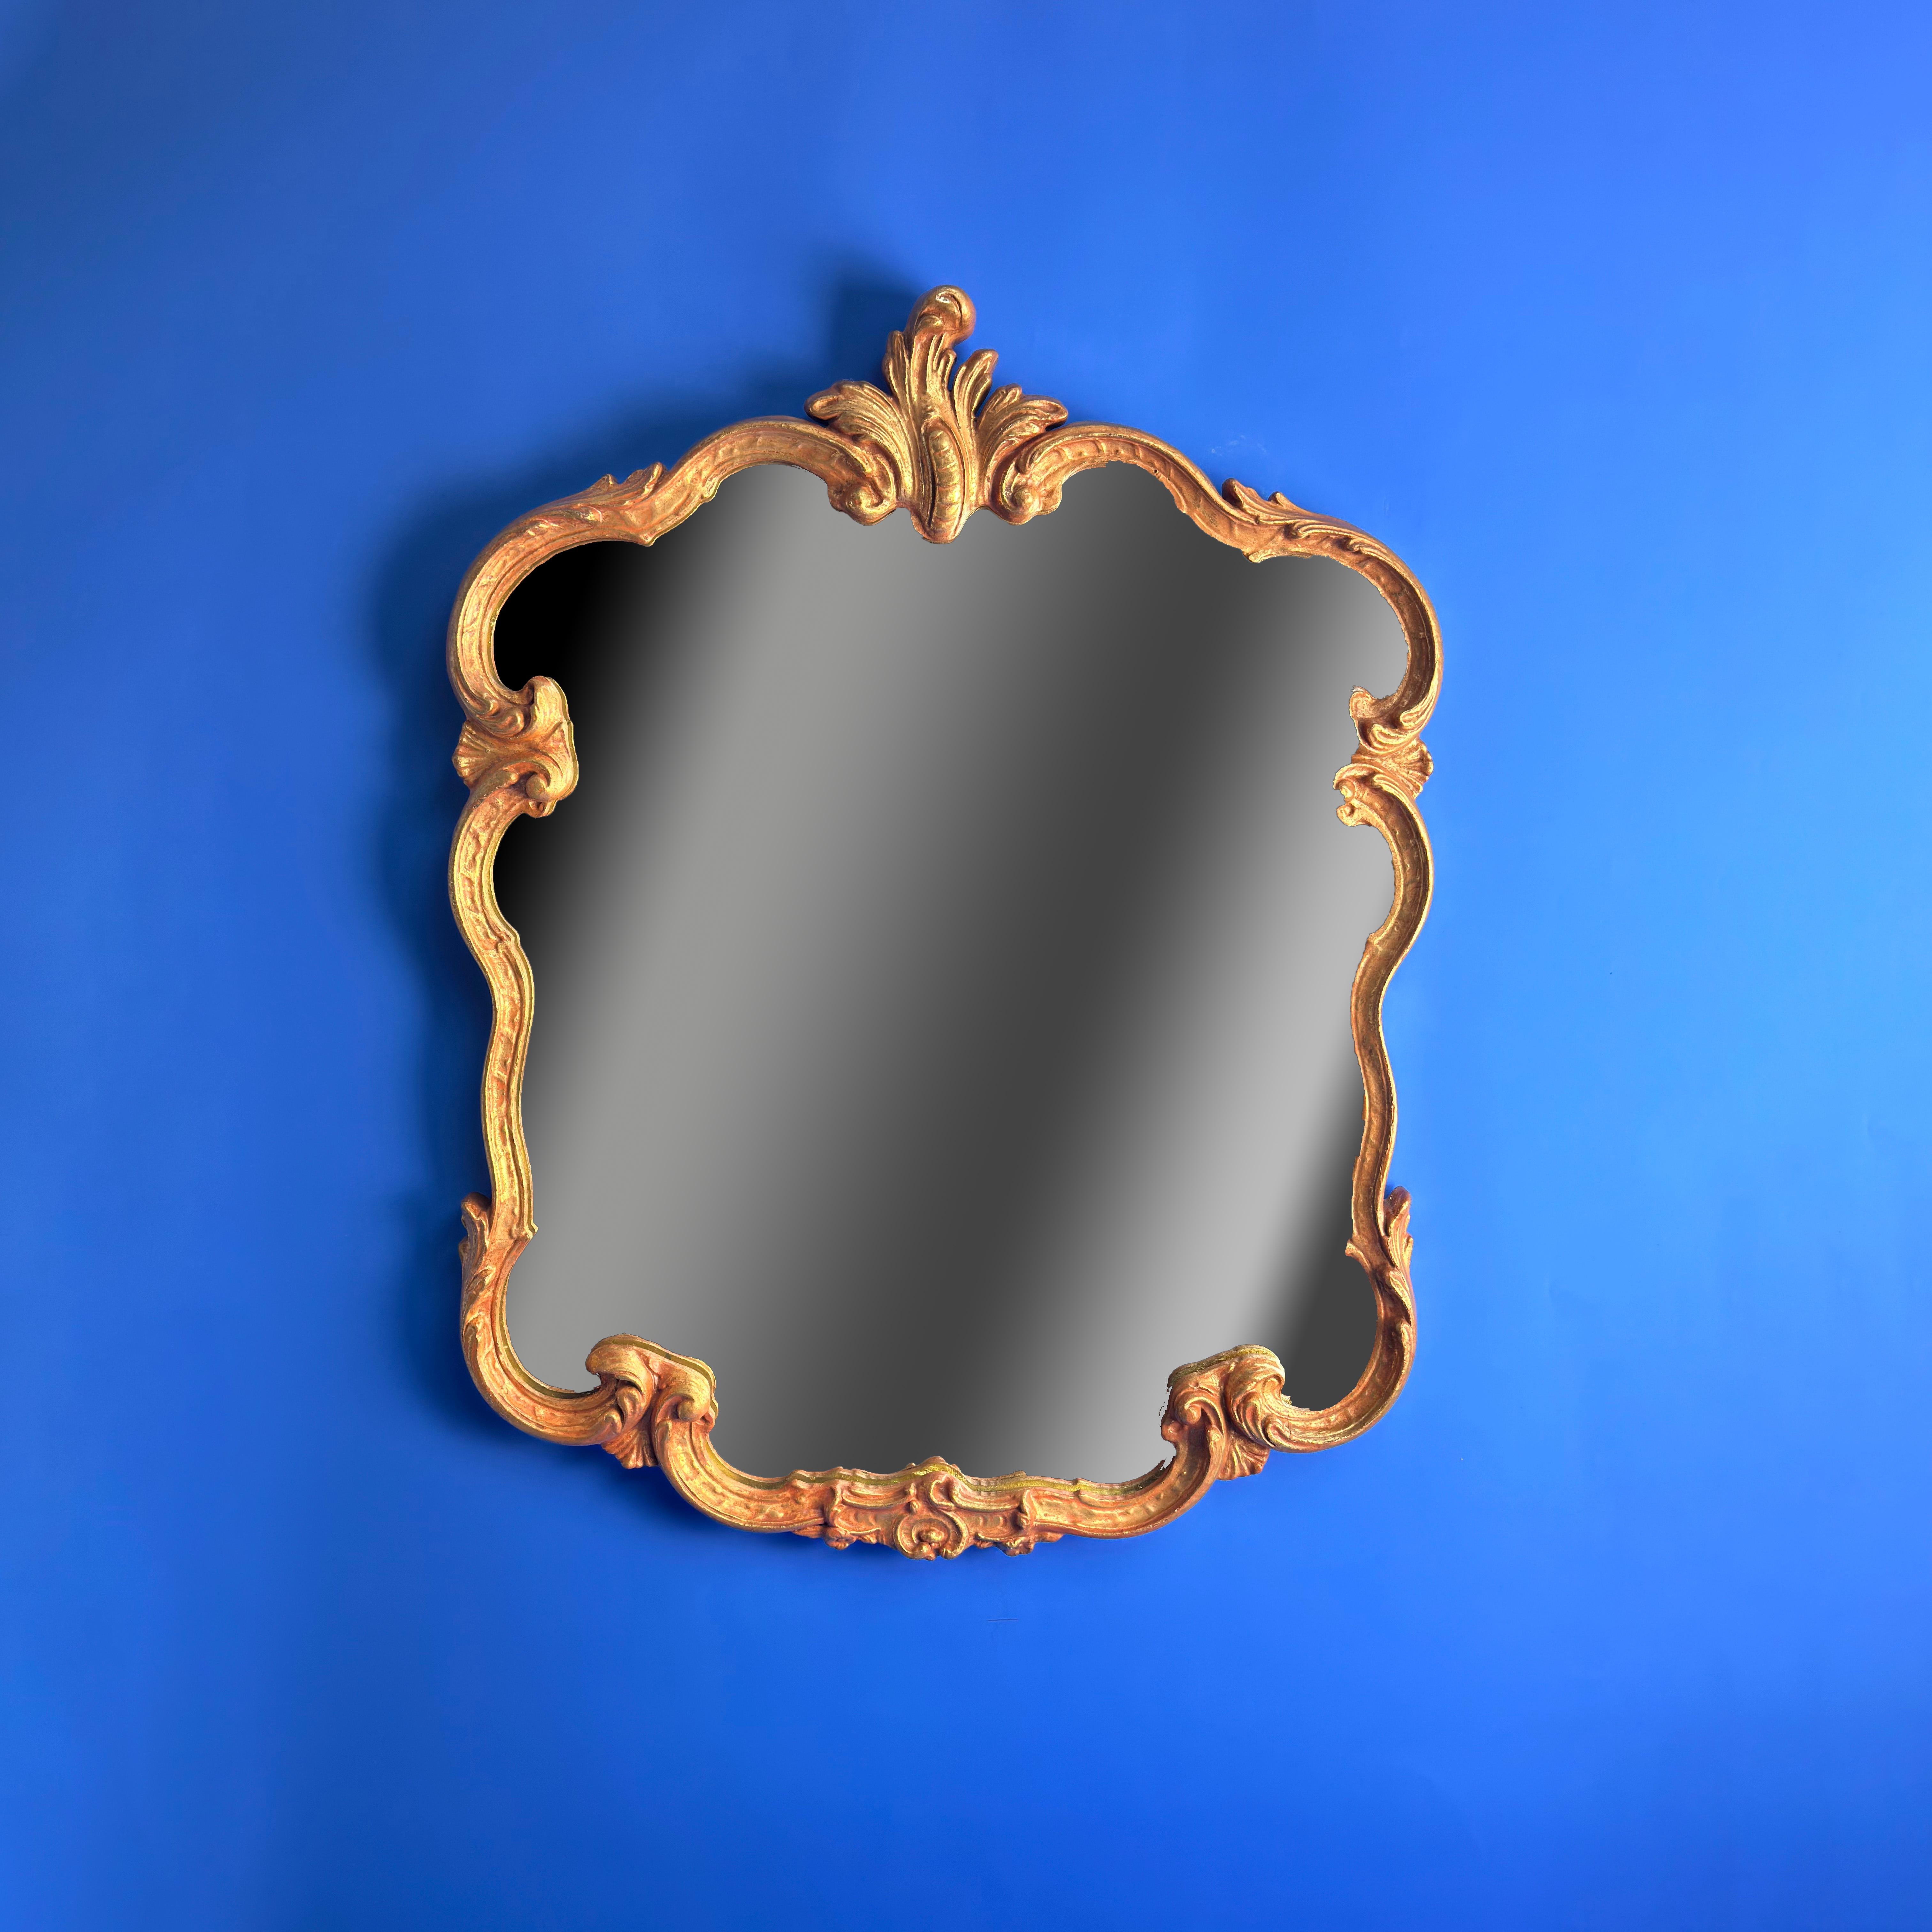  Miroir mural doré de style rococo français des années 1960 

Ce miroir mural de style rococo des années 1960 affiche une élégance simplifiée avec son mince cadre en plâtre gesso orné de feuilles d'acanthe et de détails de coquillages, fini en